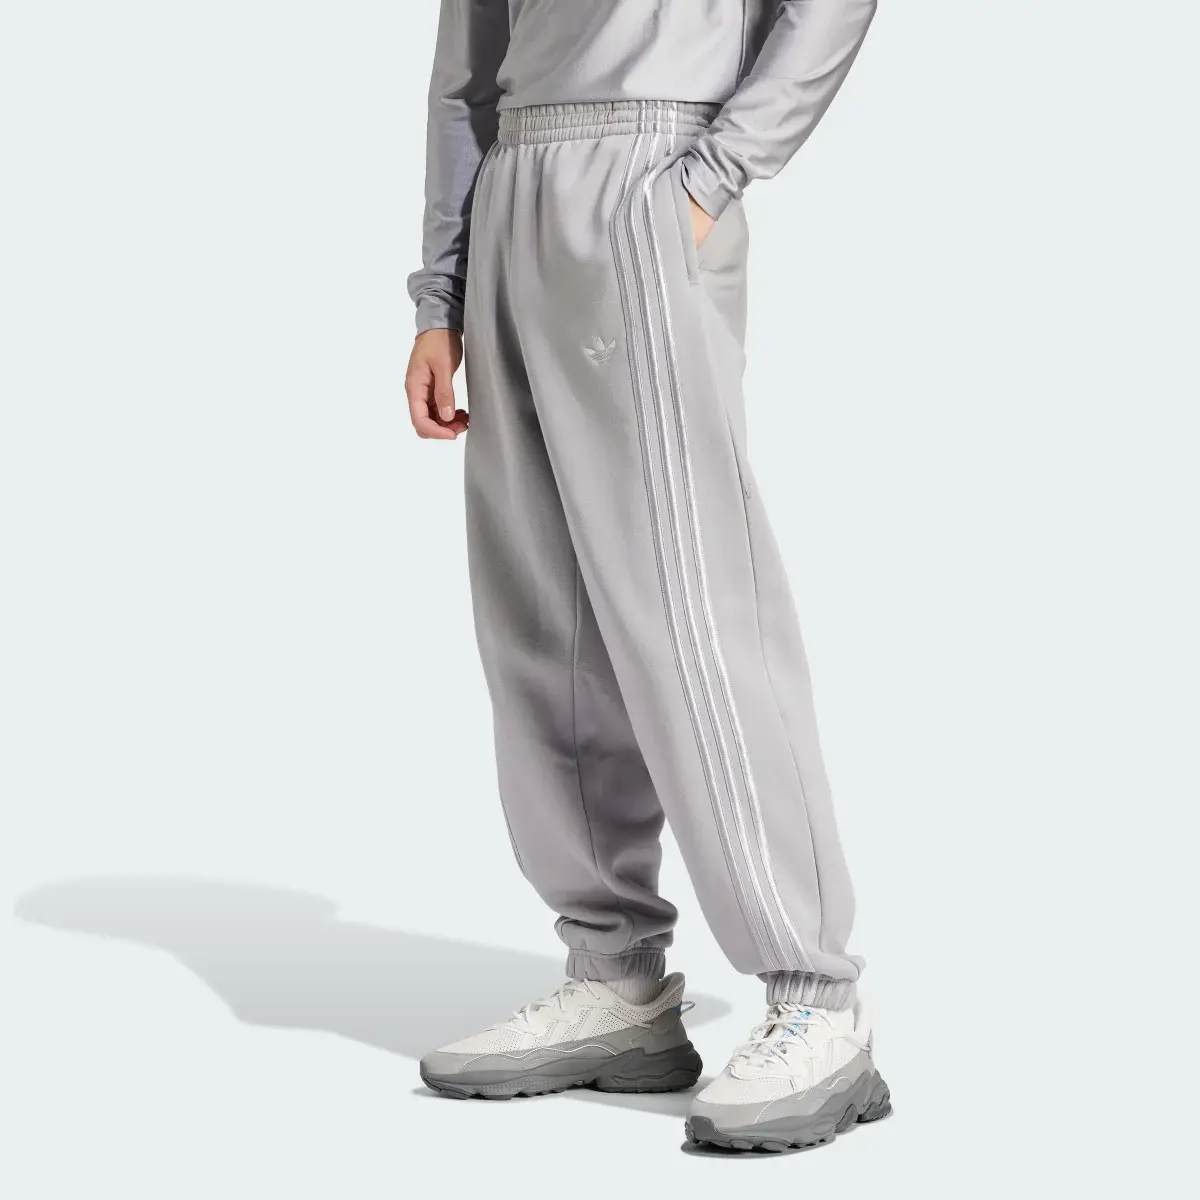 Adidas Sweat pants Fashion. 1